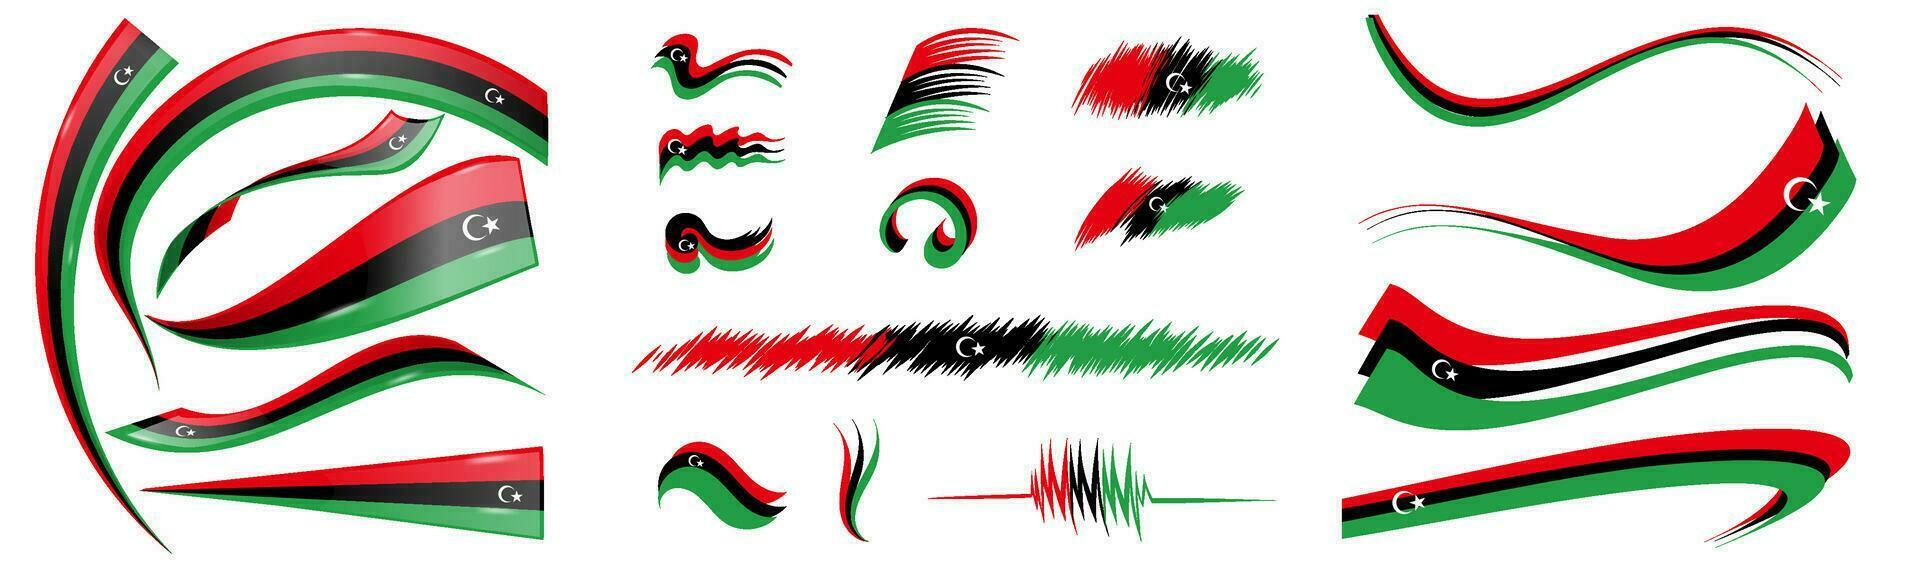 libyen flagga uppsättning element, vektor illustration på en vit bakgrund